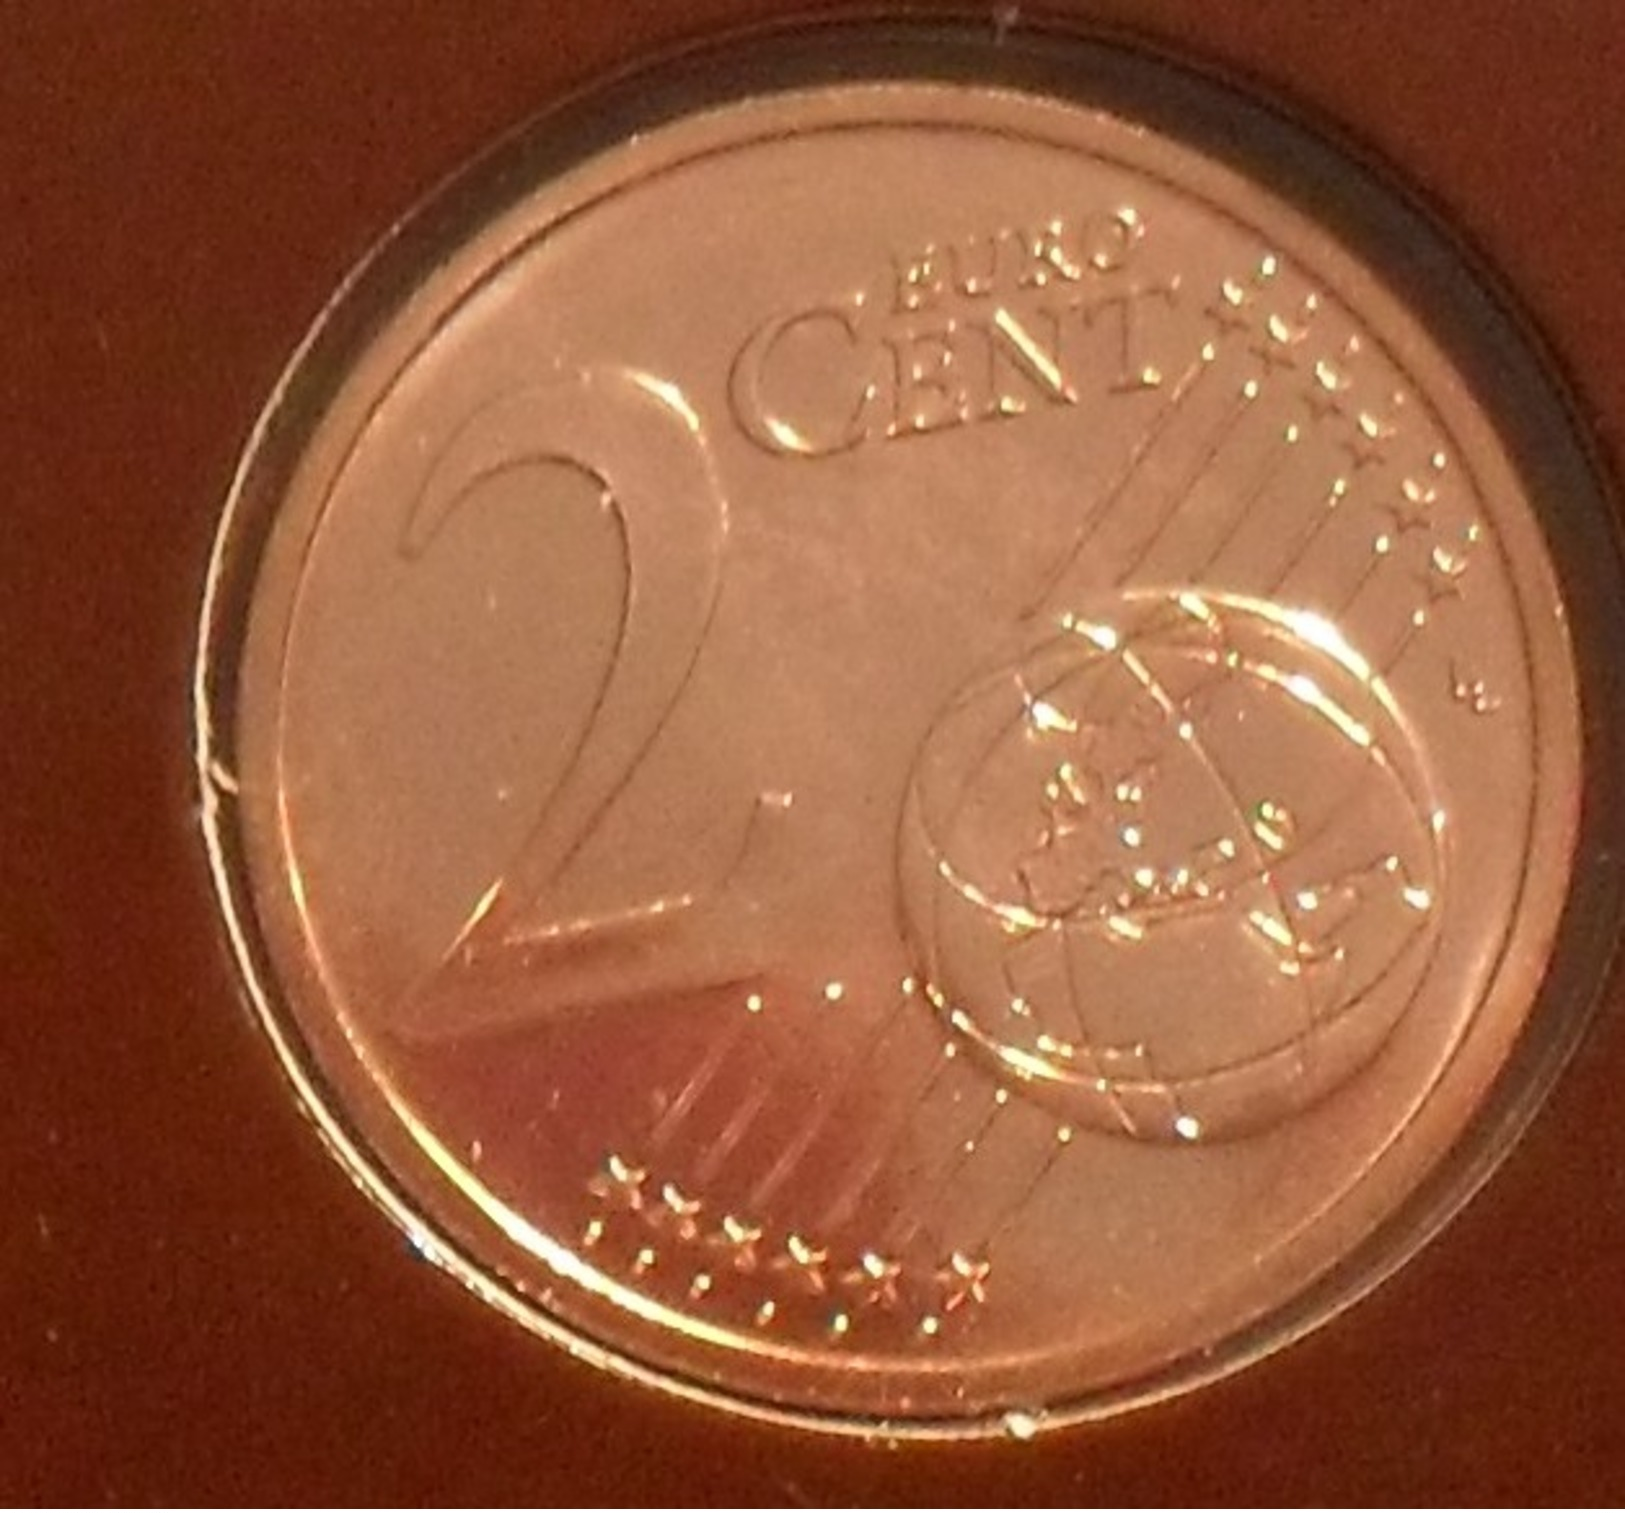 2008 - France - 2 CENT EURO, Cor De Chasse, Scellée BU, KM 1283 - France